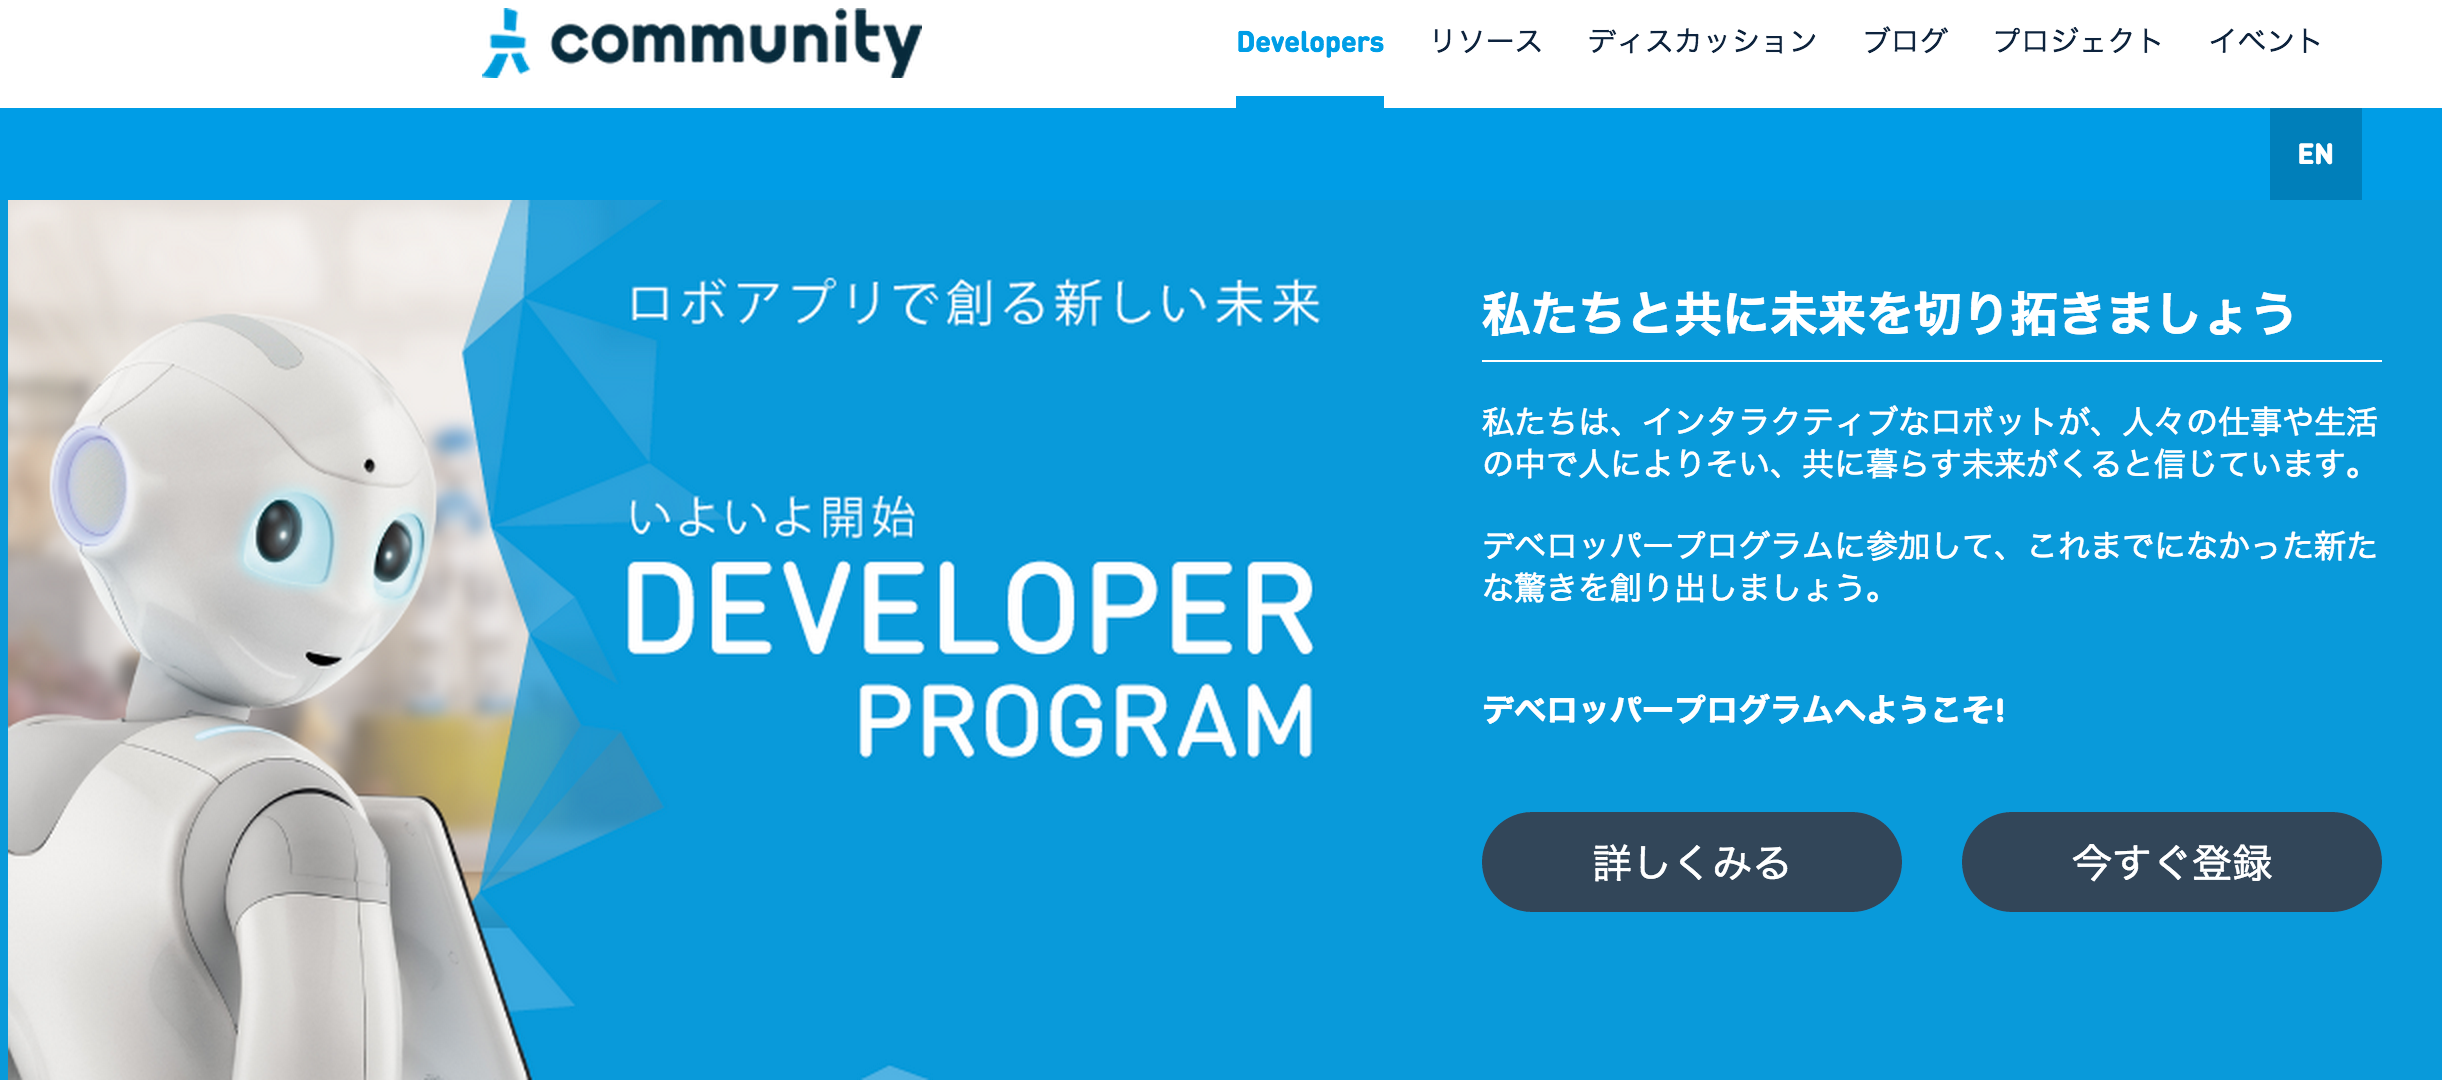 Developers___Aldebaran_Community.png